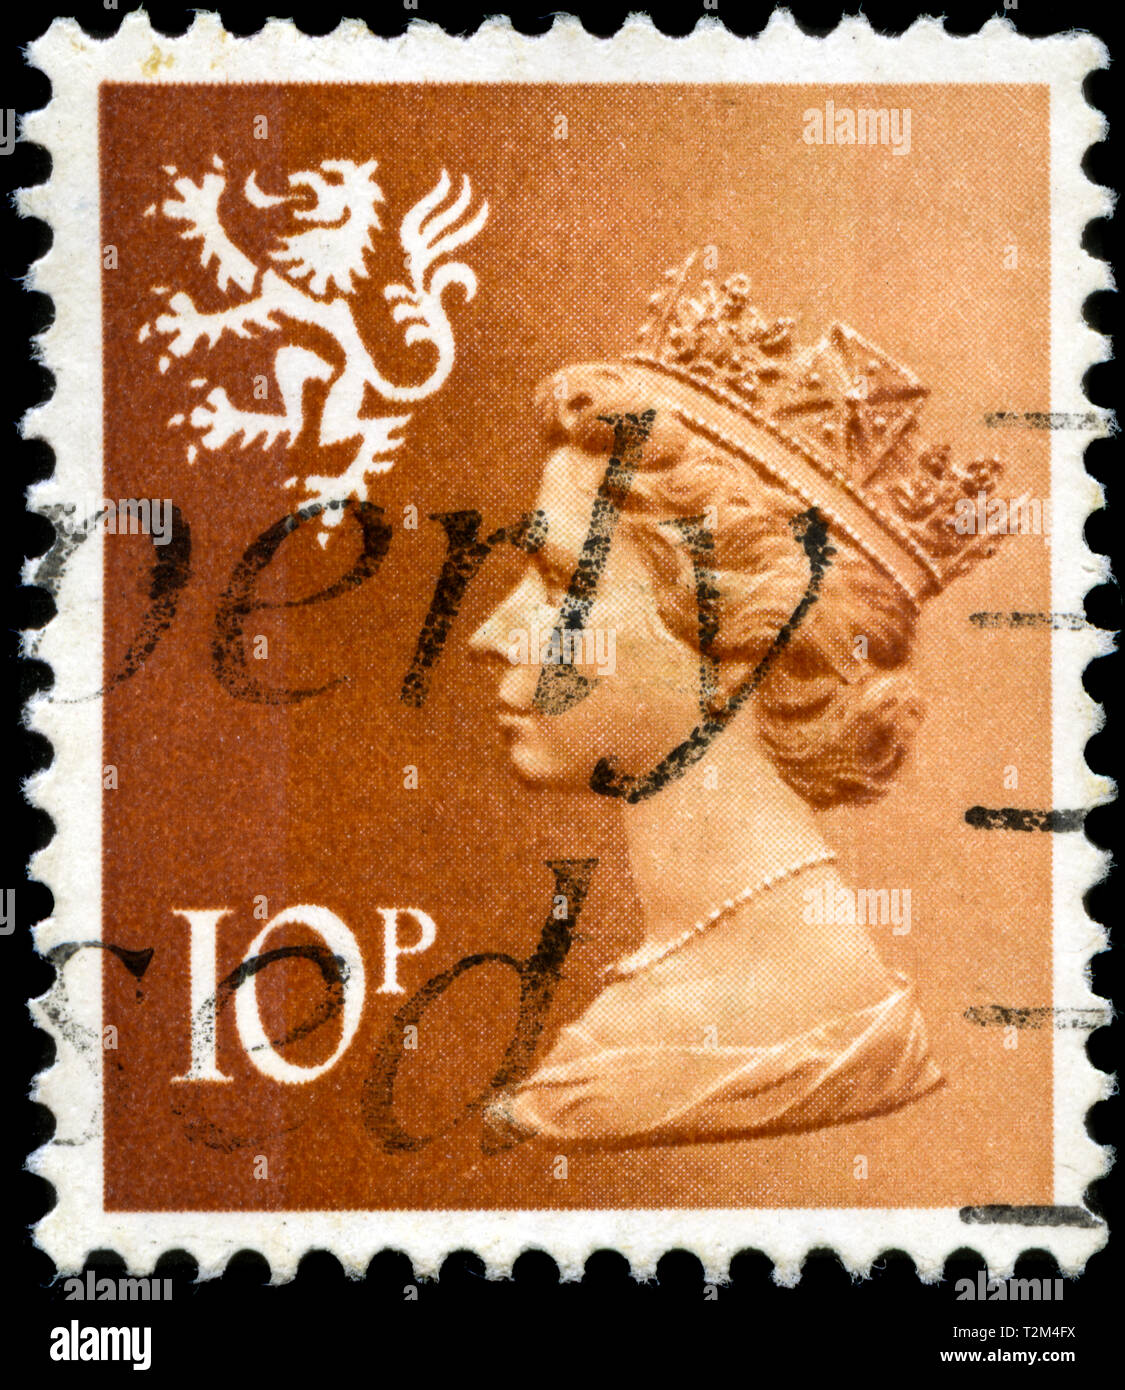 Timbre-poste du Royaume-Uni et l'Irlande du Nord dans la série régionale - Ecosse publié en 1976 Banque D'Images